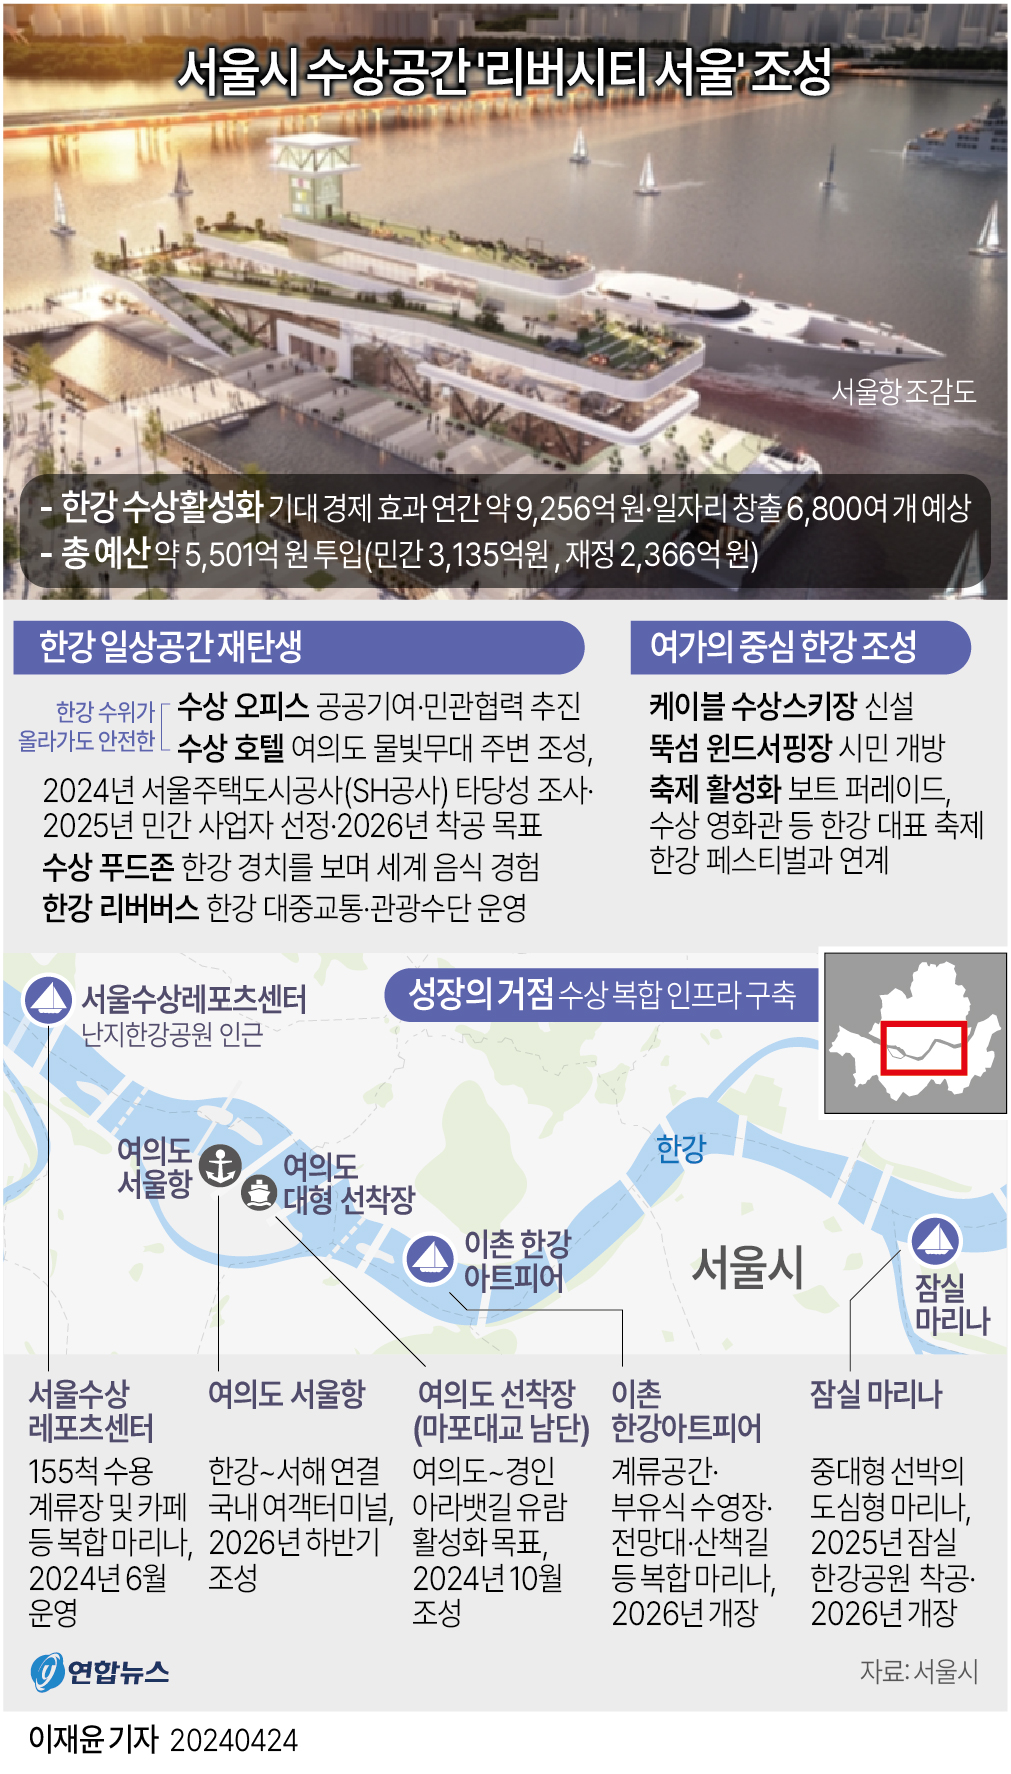 [그래픽] 서울시 수상공간 '리버시티 서울' 조성